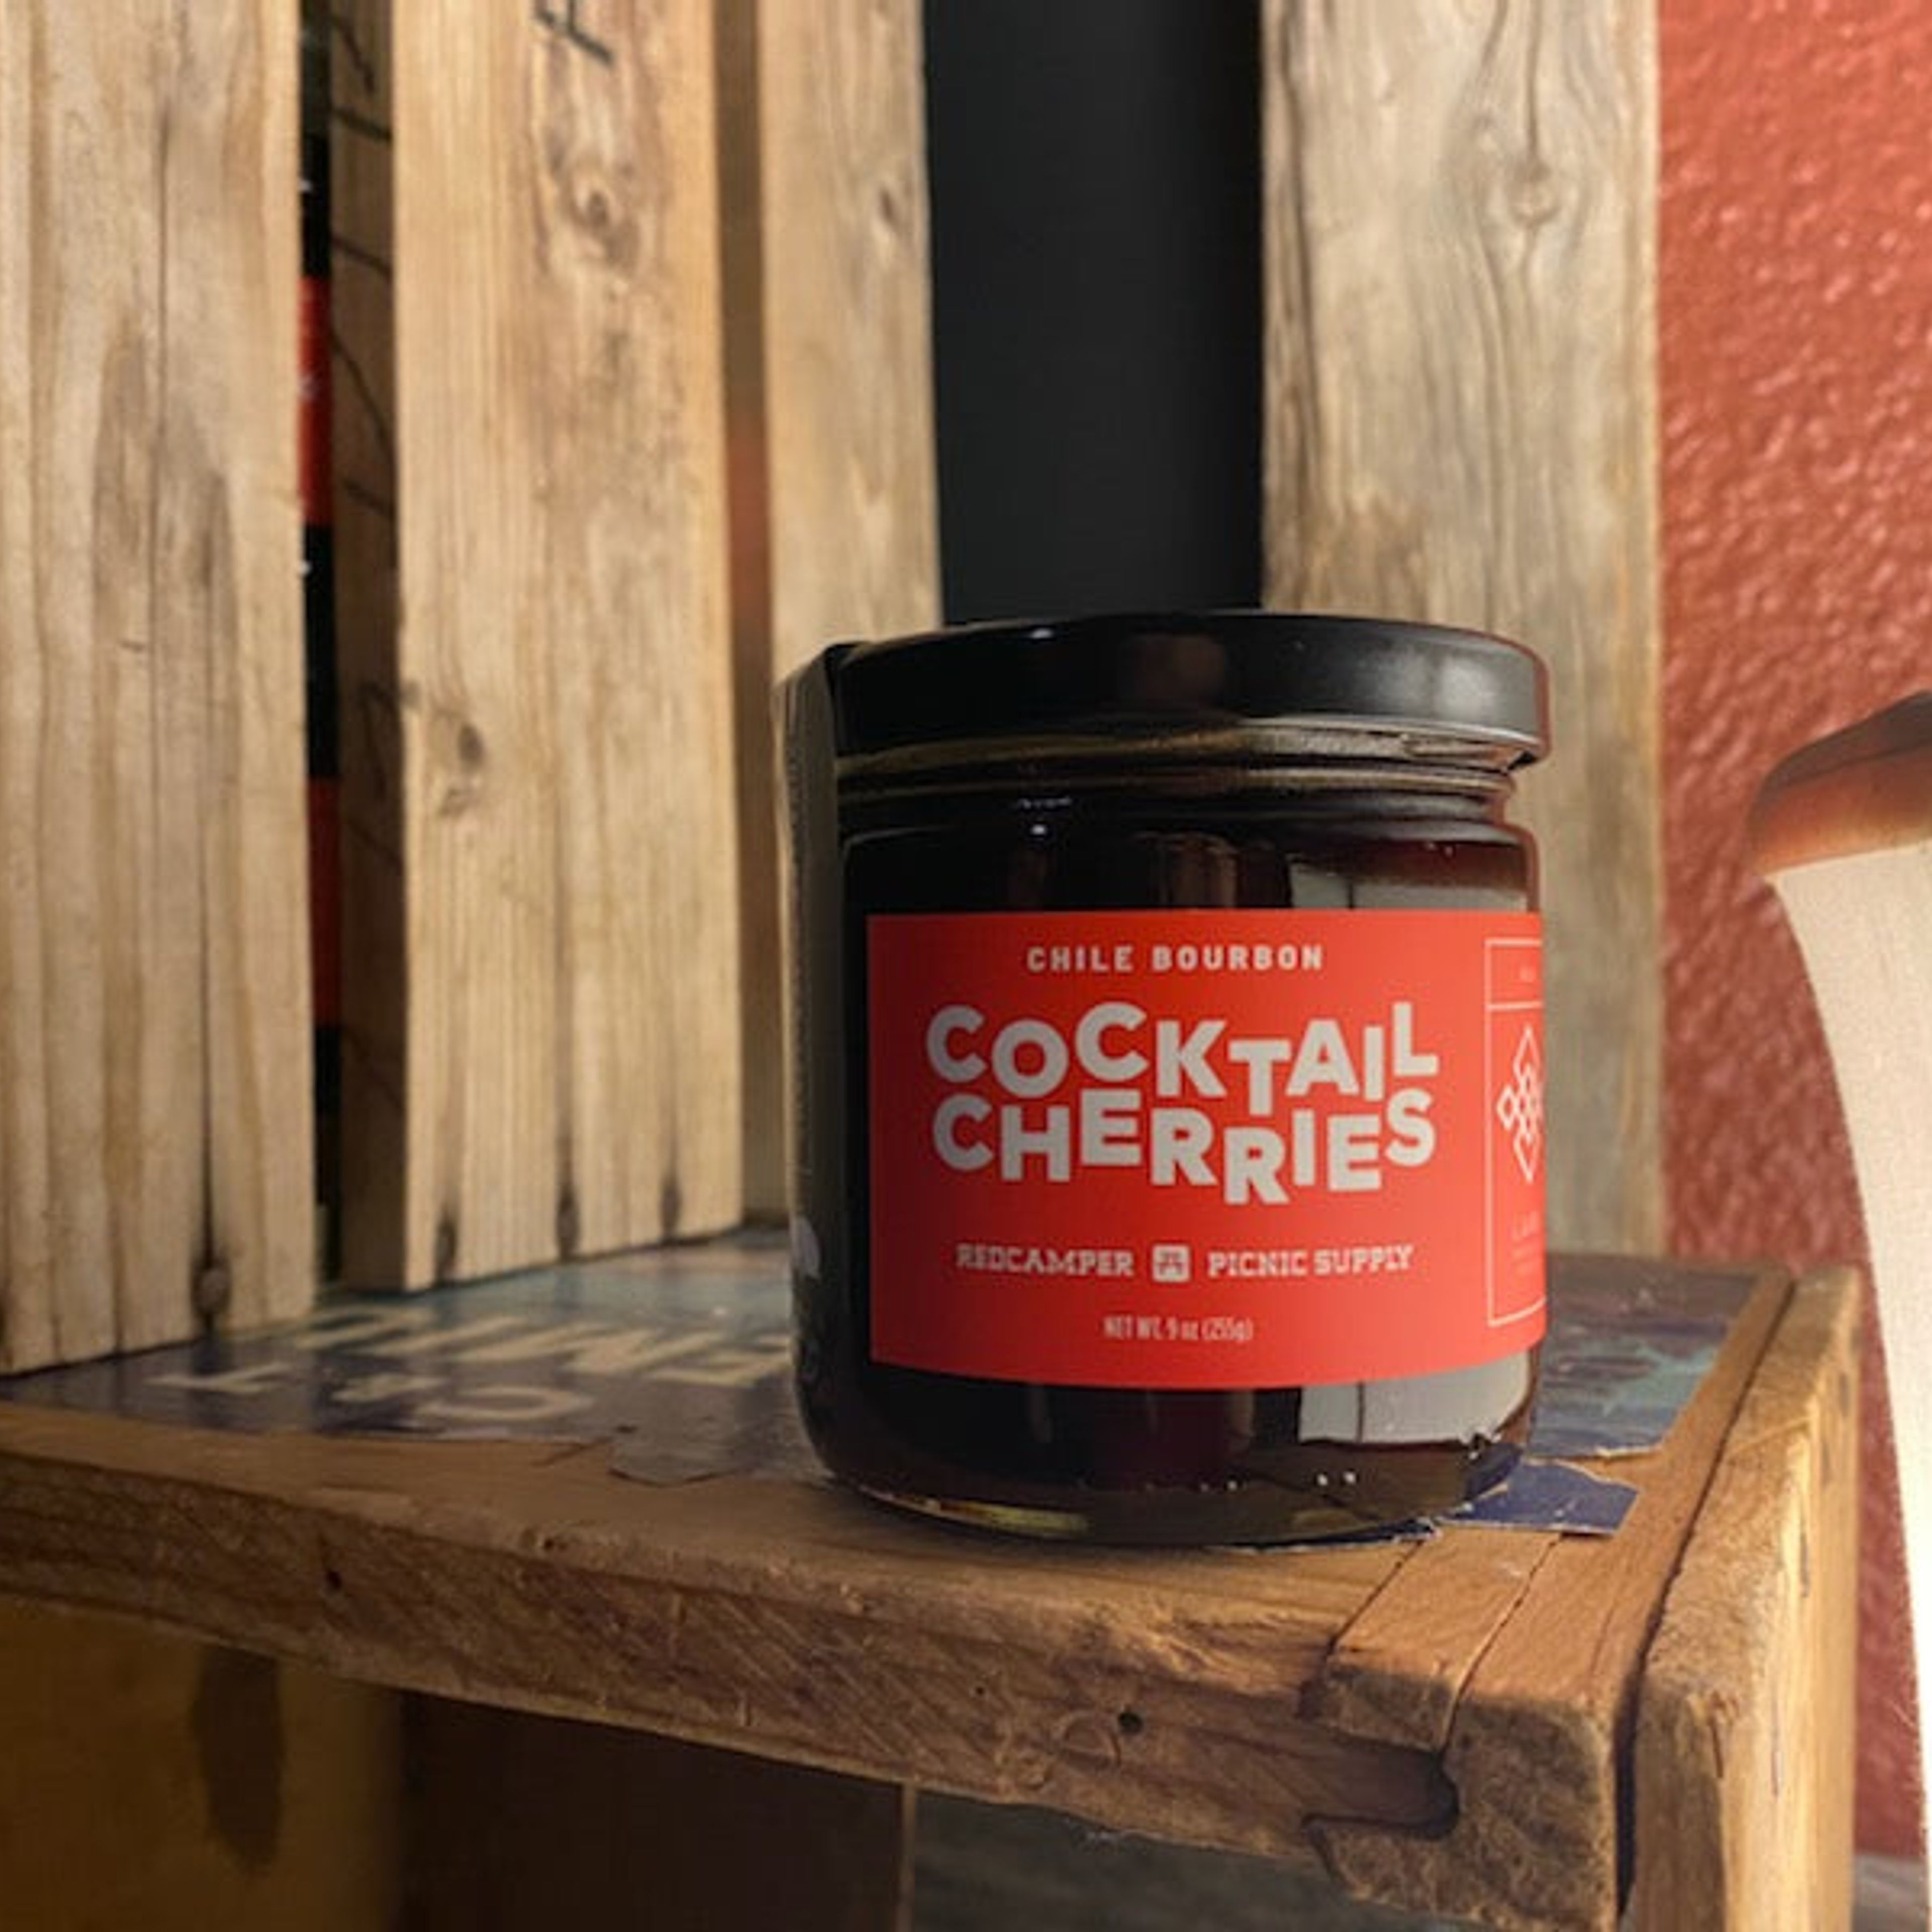 Chile Bourbon Cocktail Cherries: Proper Size